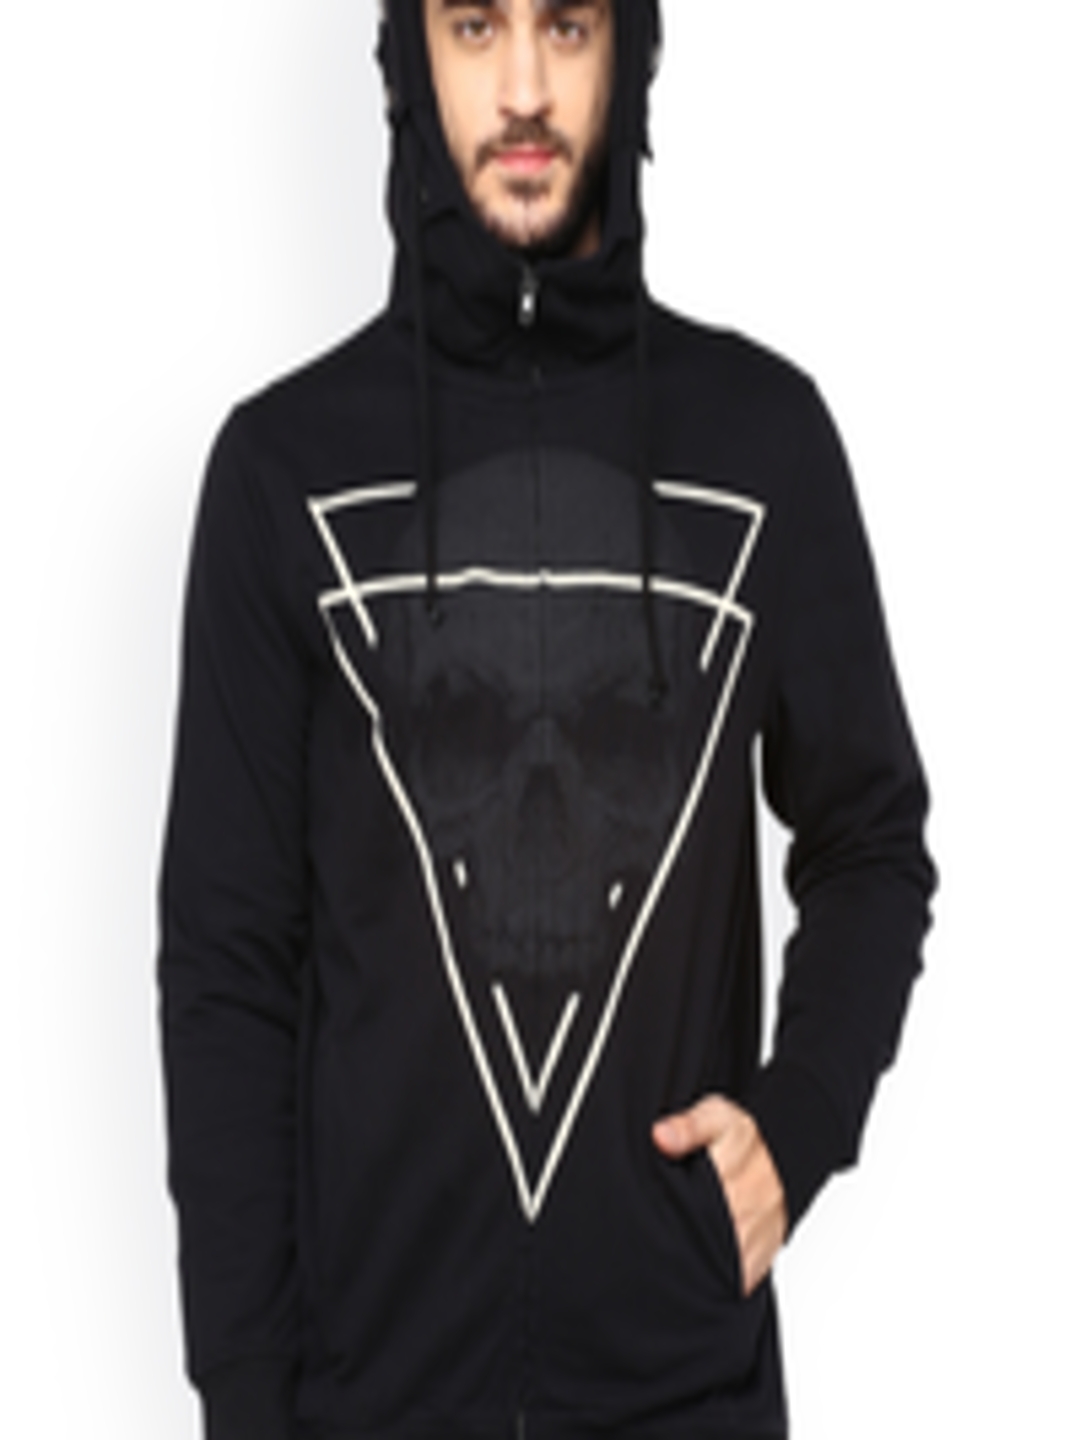 Buy PUNK Black Printed Hooded Sweatshirt - Sweatshirts for Men 1694287